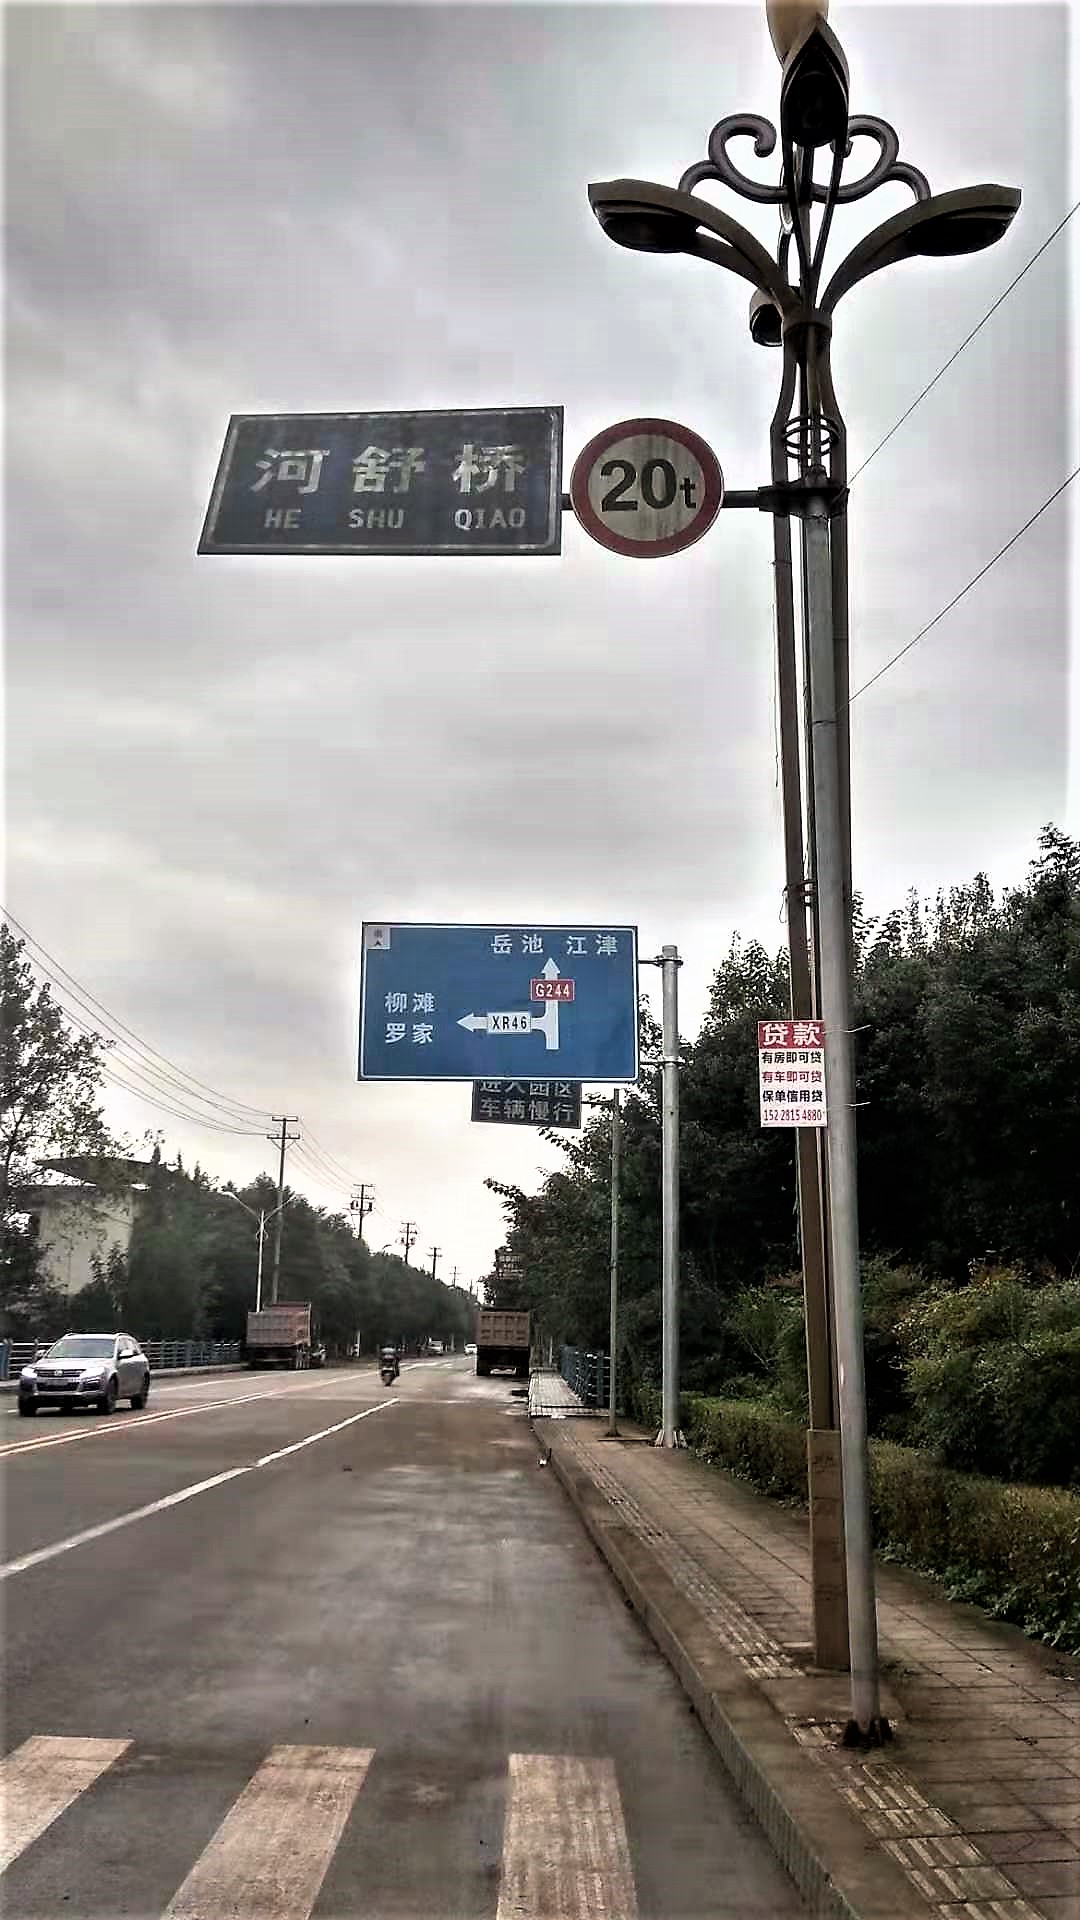 河舒镇境内哪条道路才是真正的国道g244?